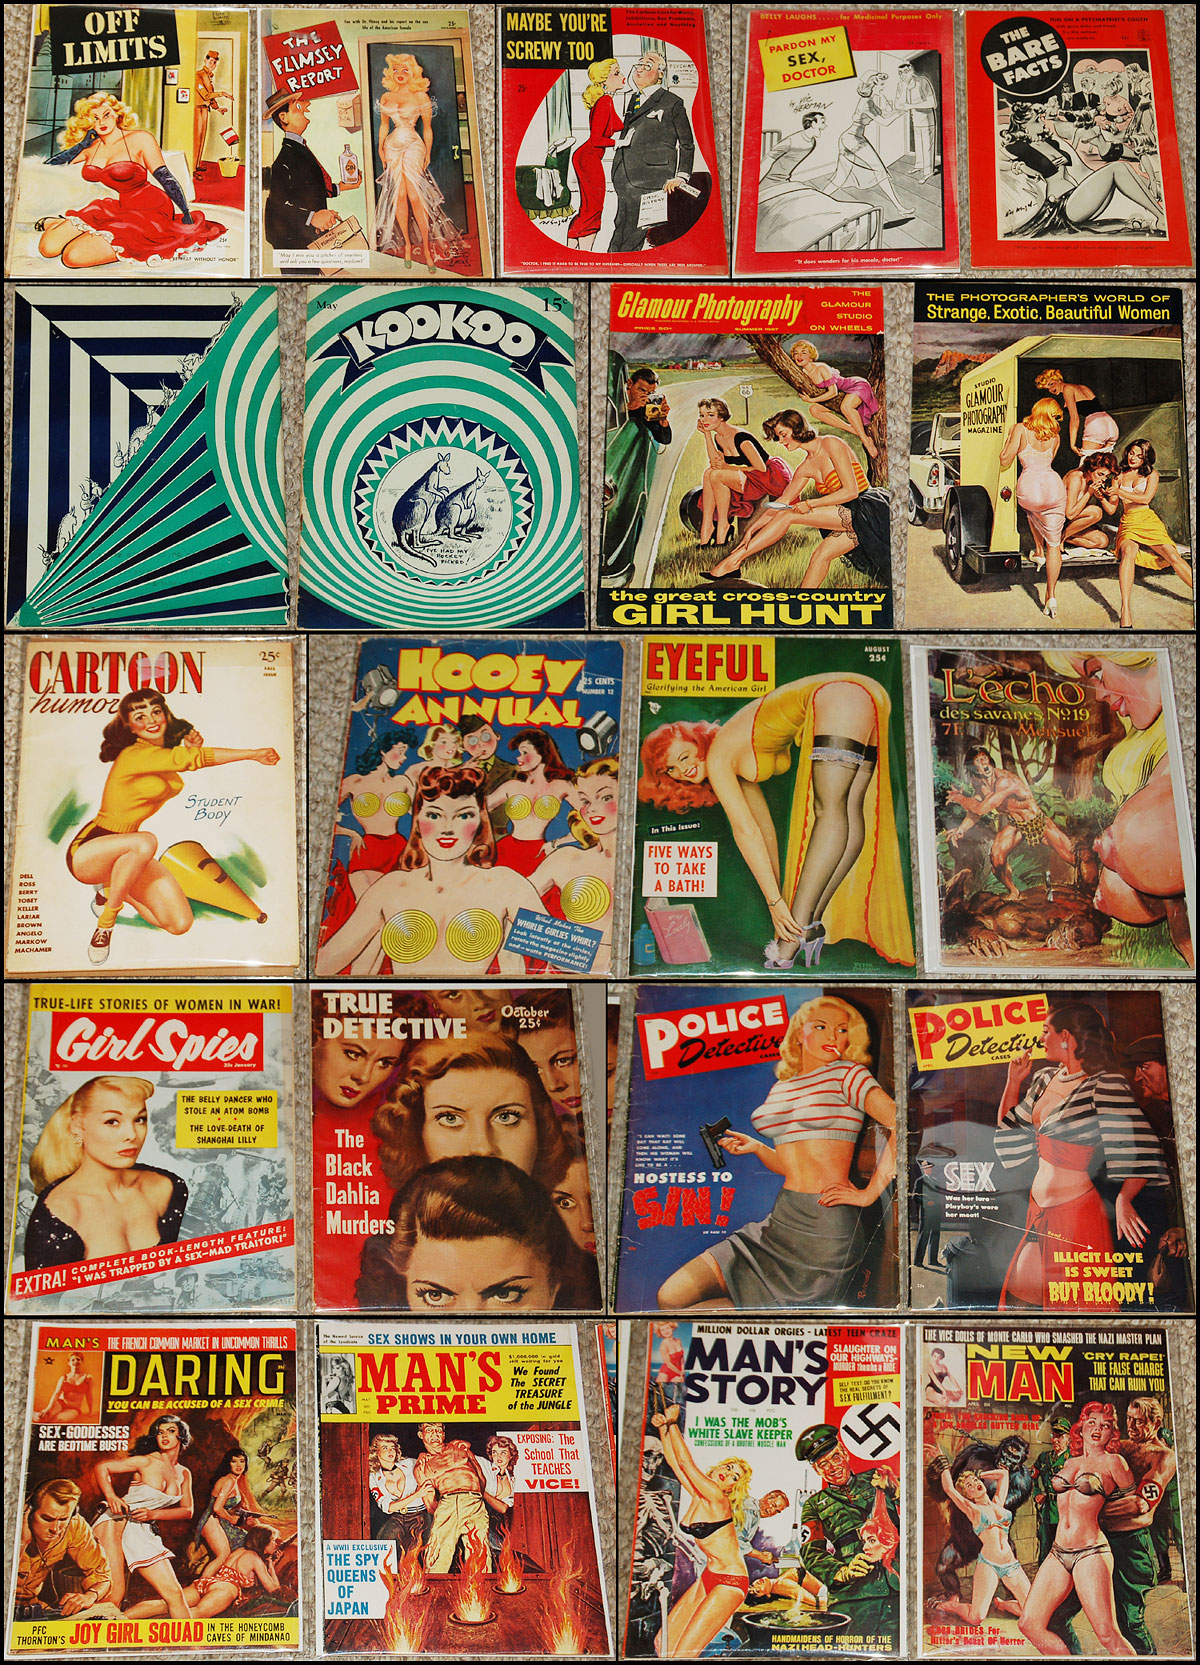 magazines-rare.jpg